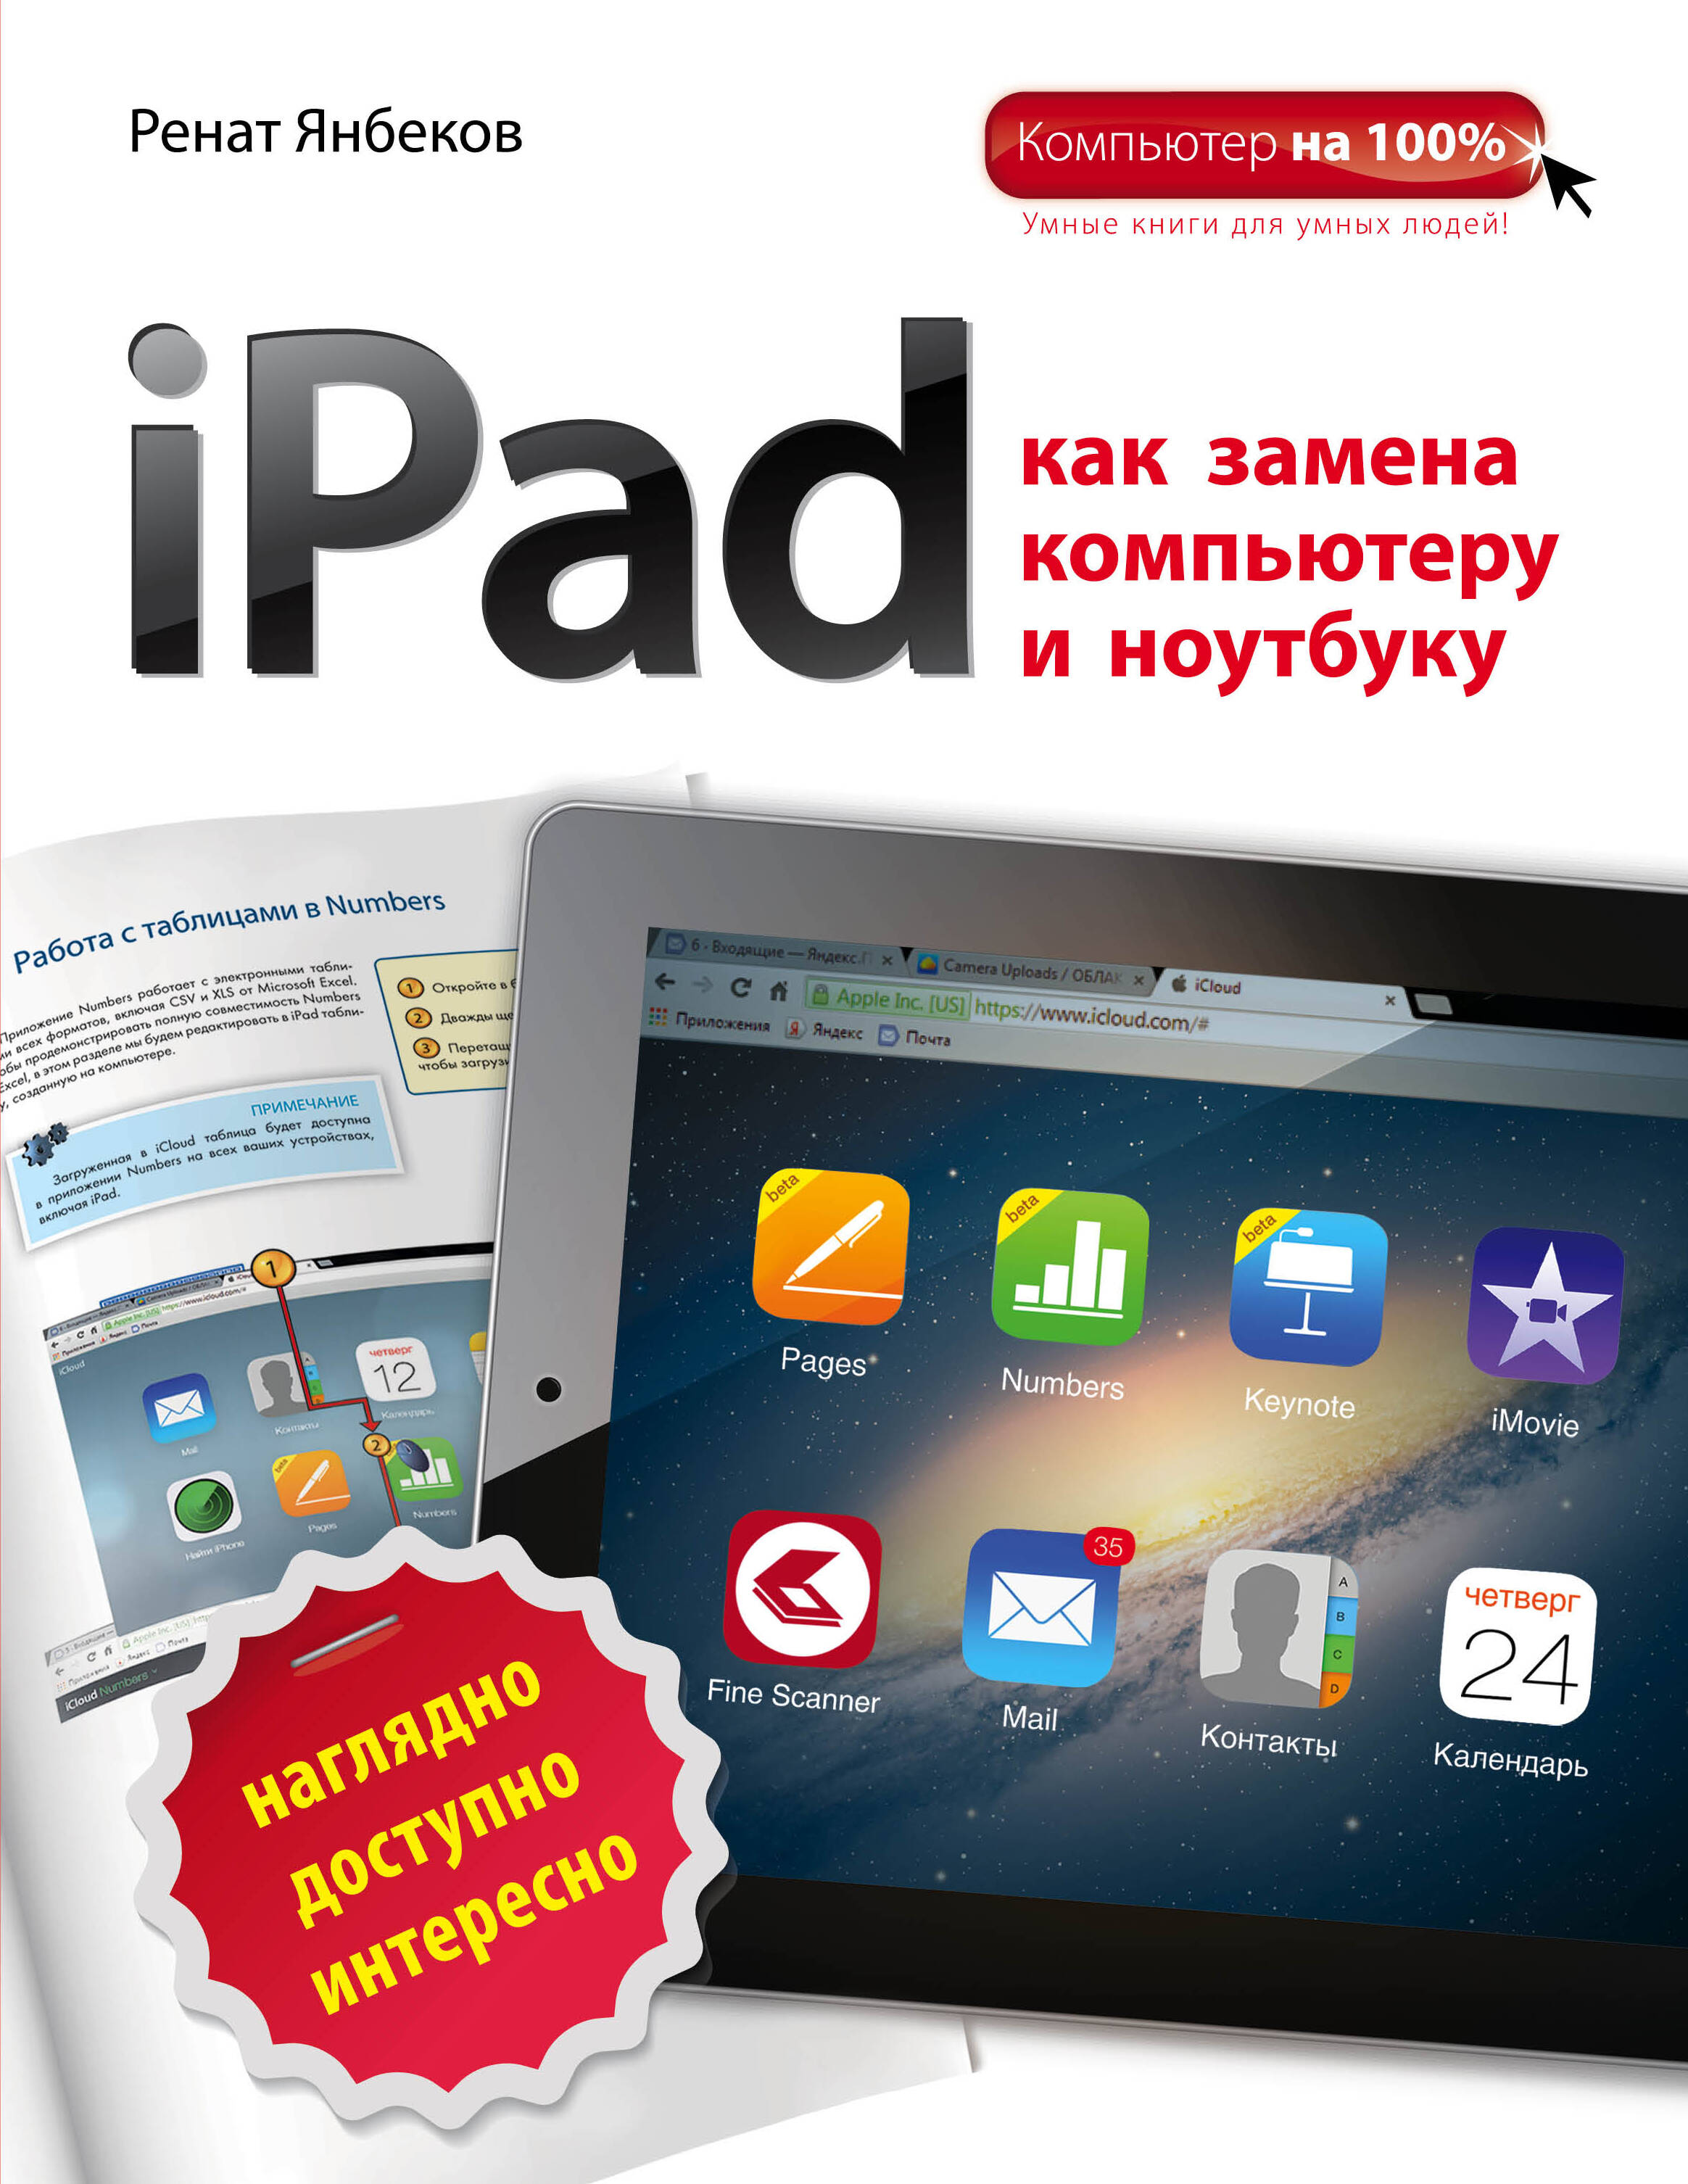 iPad     